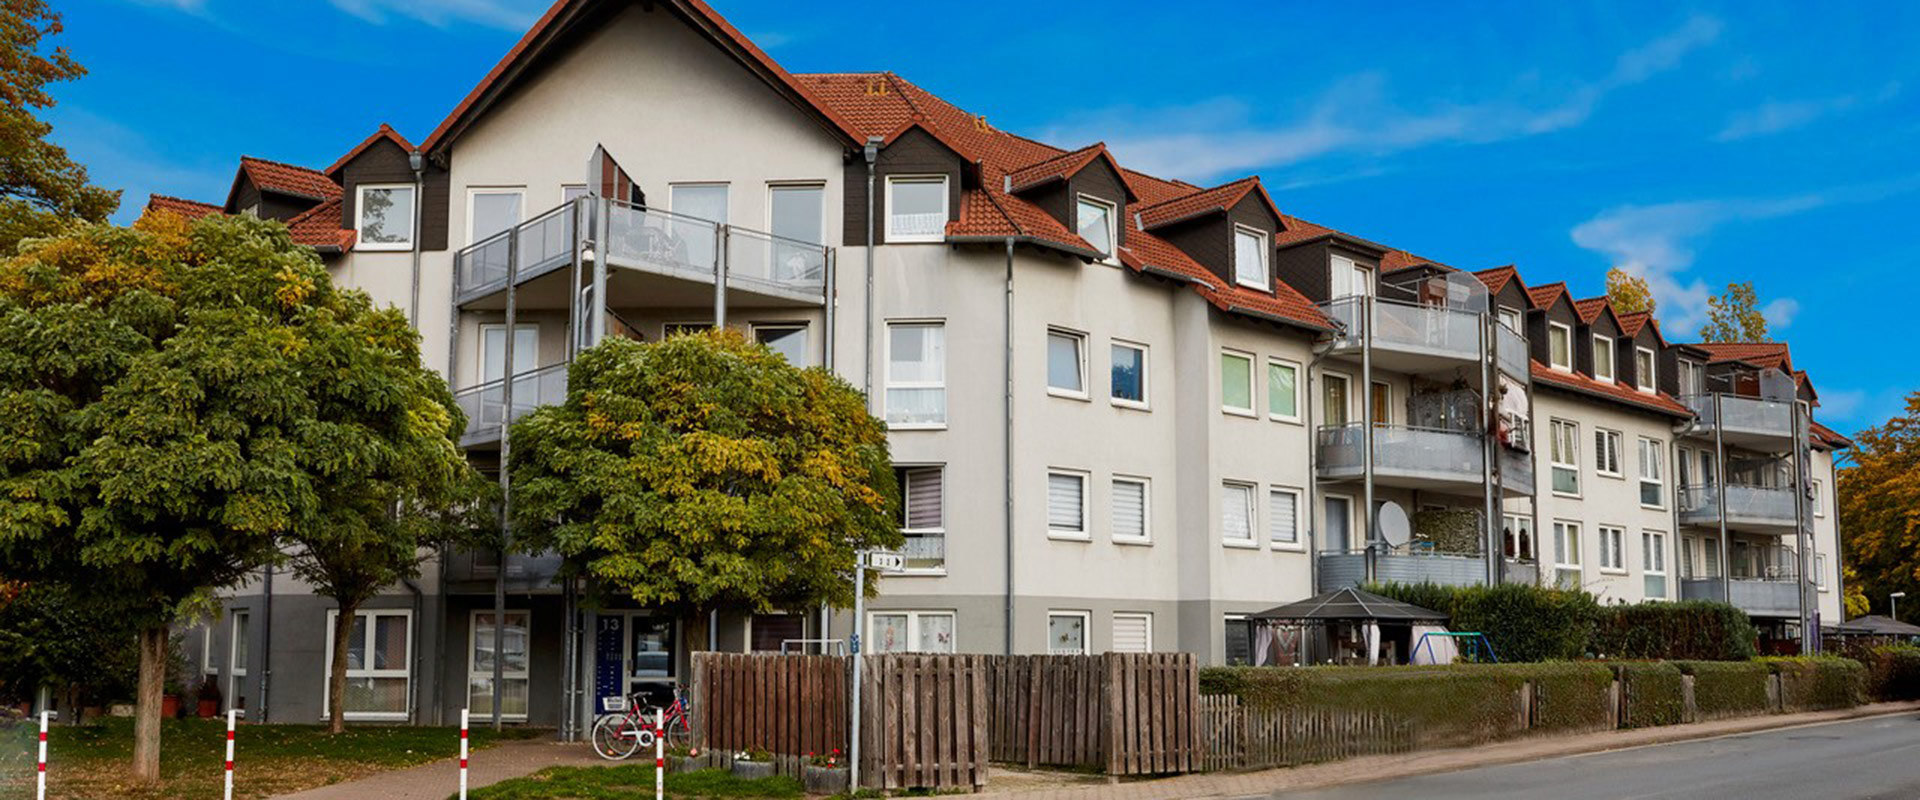 aik erwirbt in Hannover eine Anlage mit 121 frei finanzierten und geförderten Wohnungen